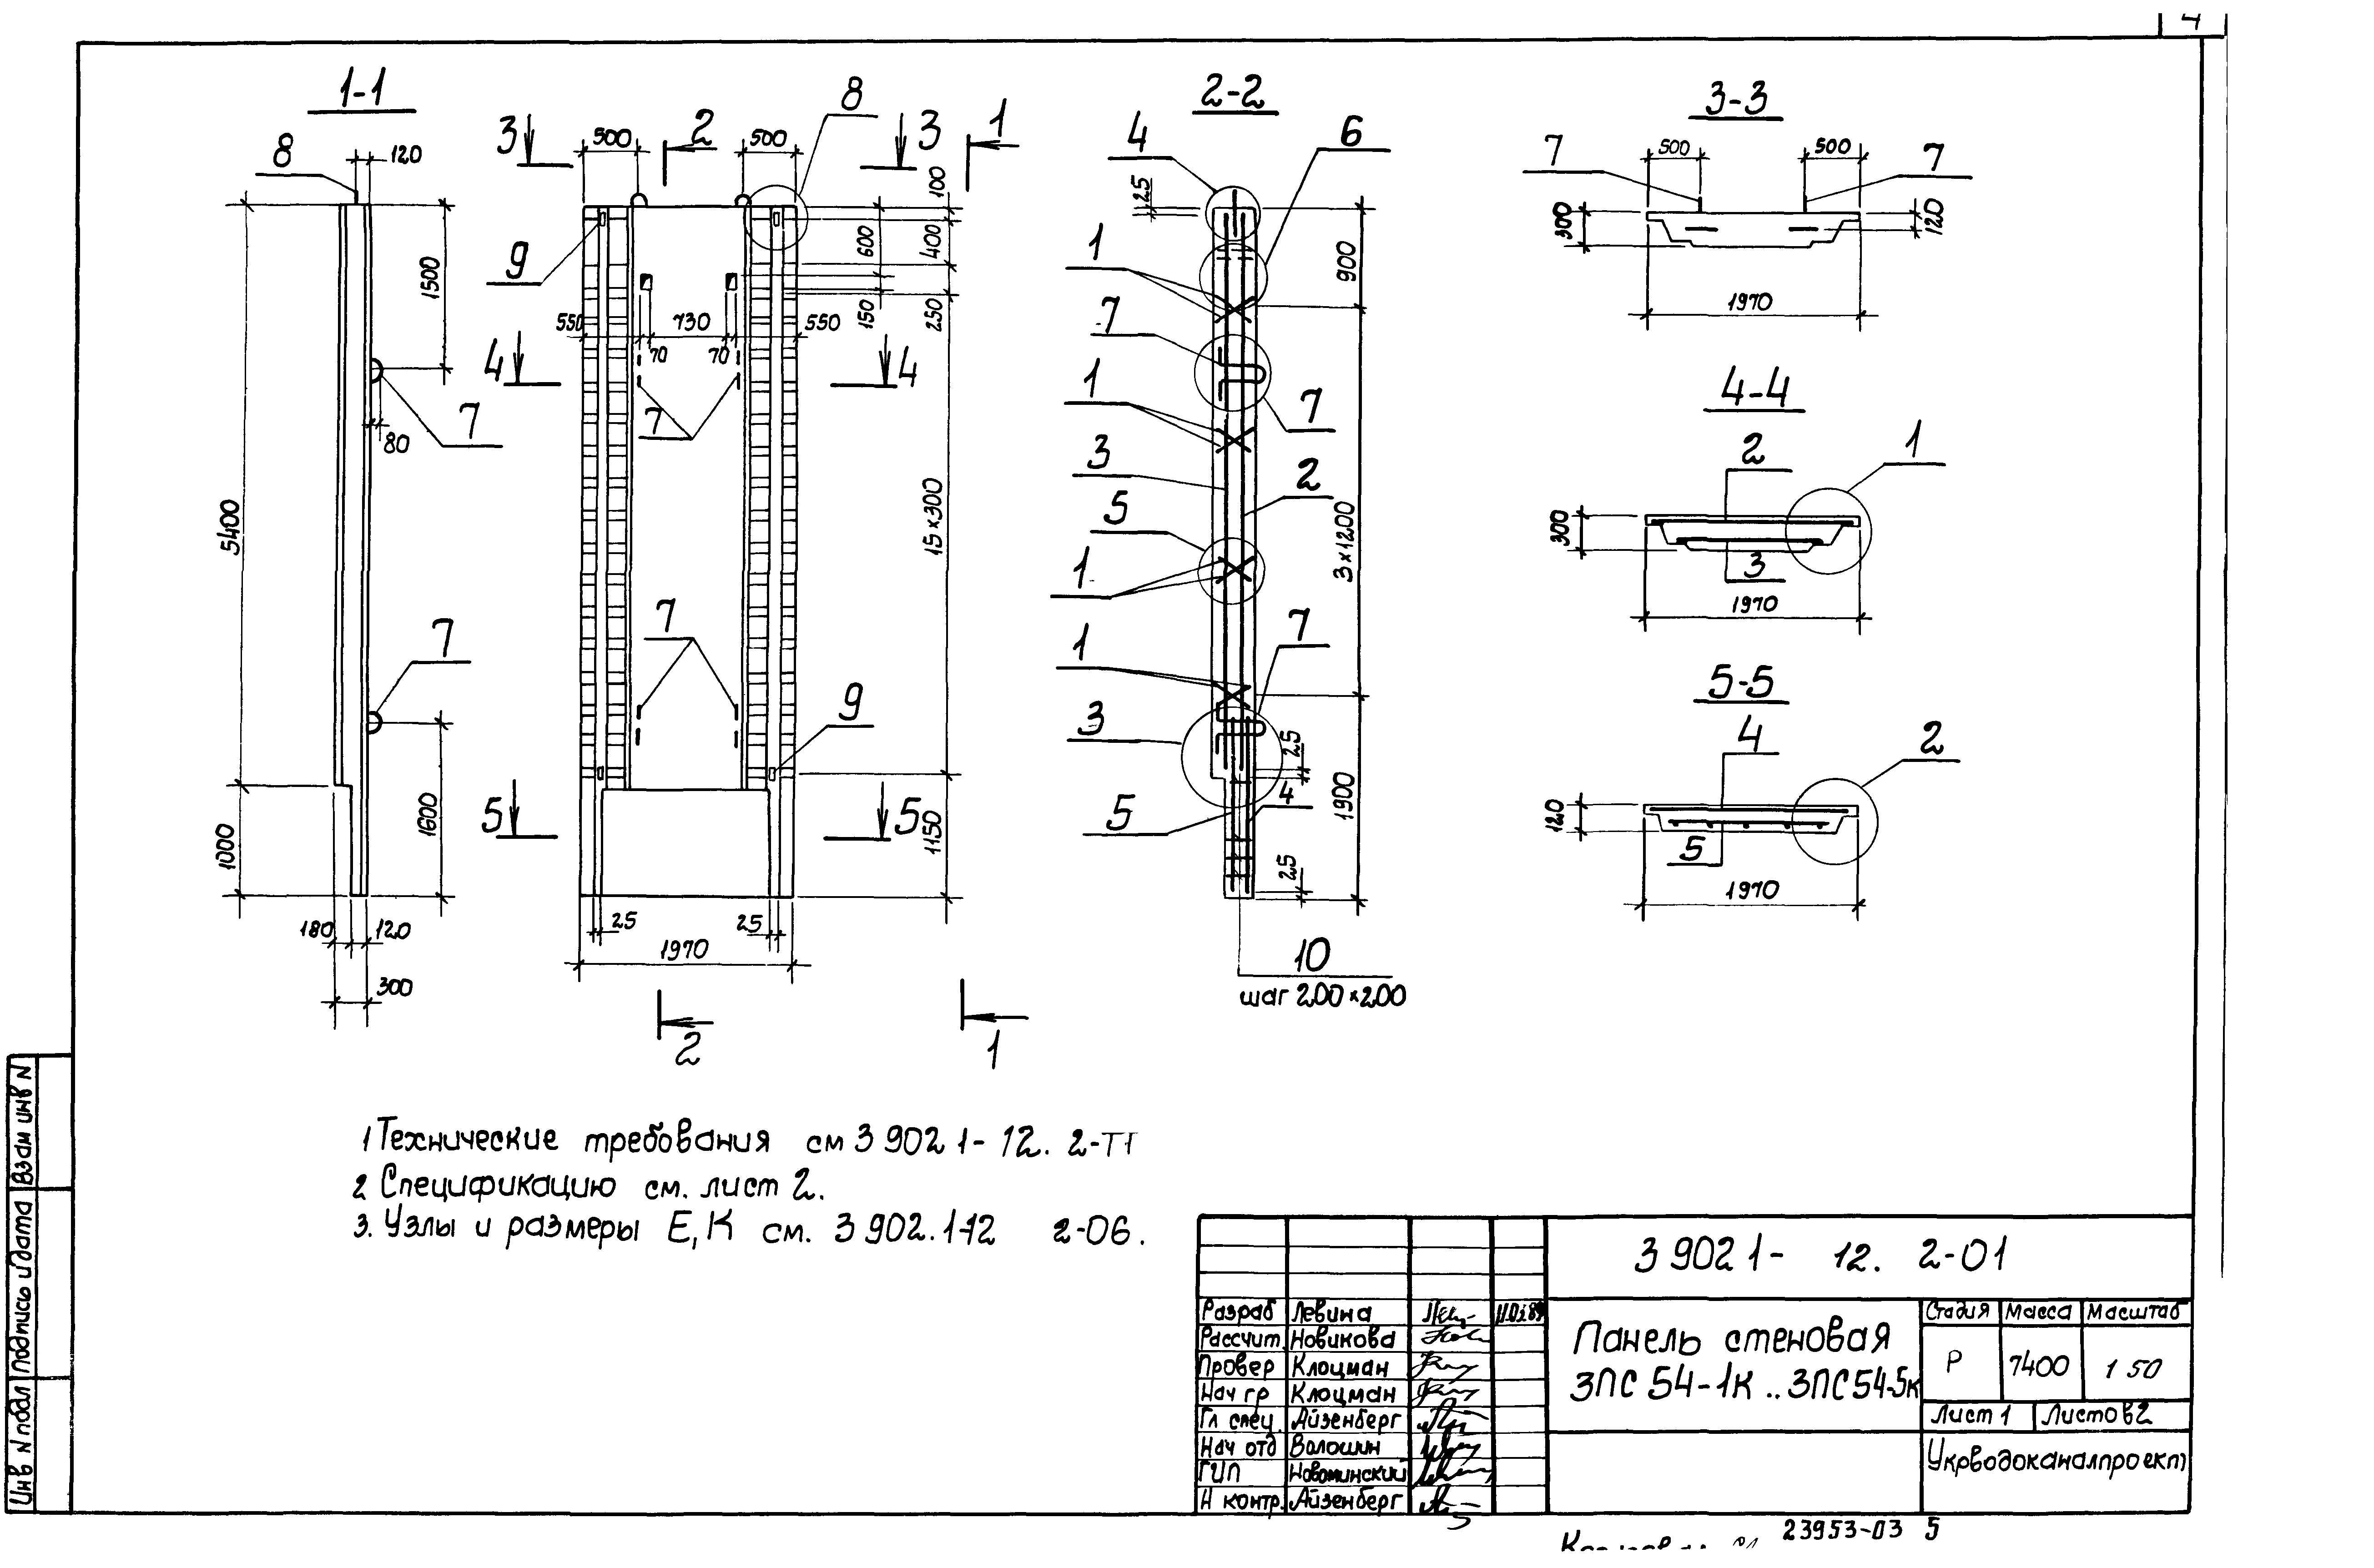 Панель стеновая 3ПС54-3к Серия 3.902.1-12, вып.2